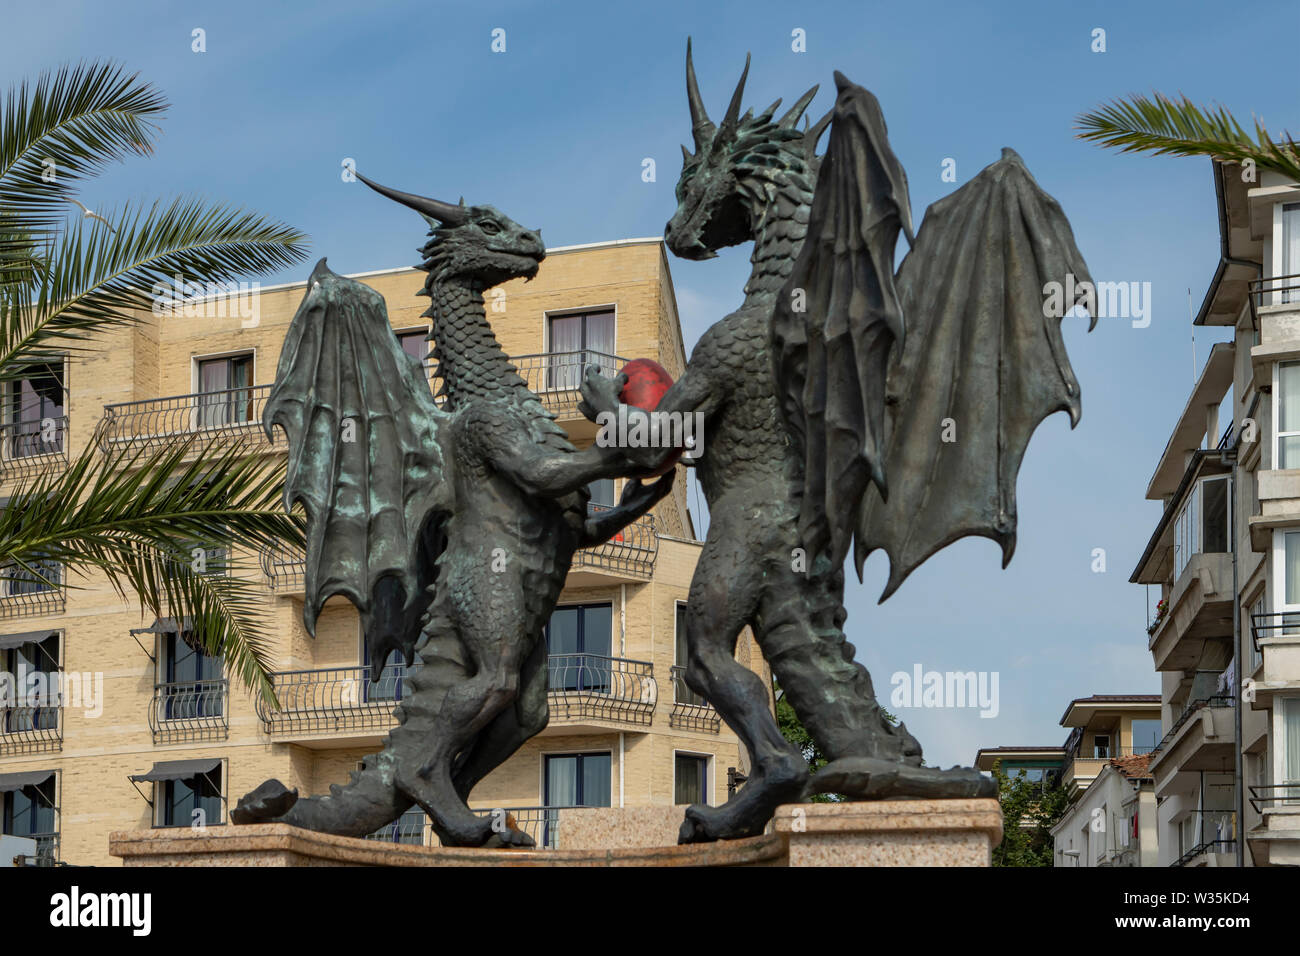 Dragons in Love Statue, Varna, Bulgaria Stock Photo